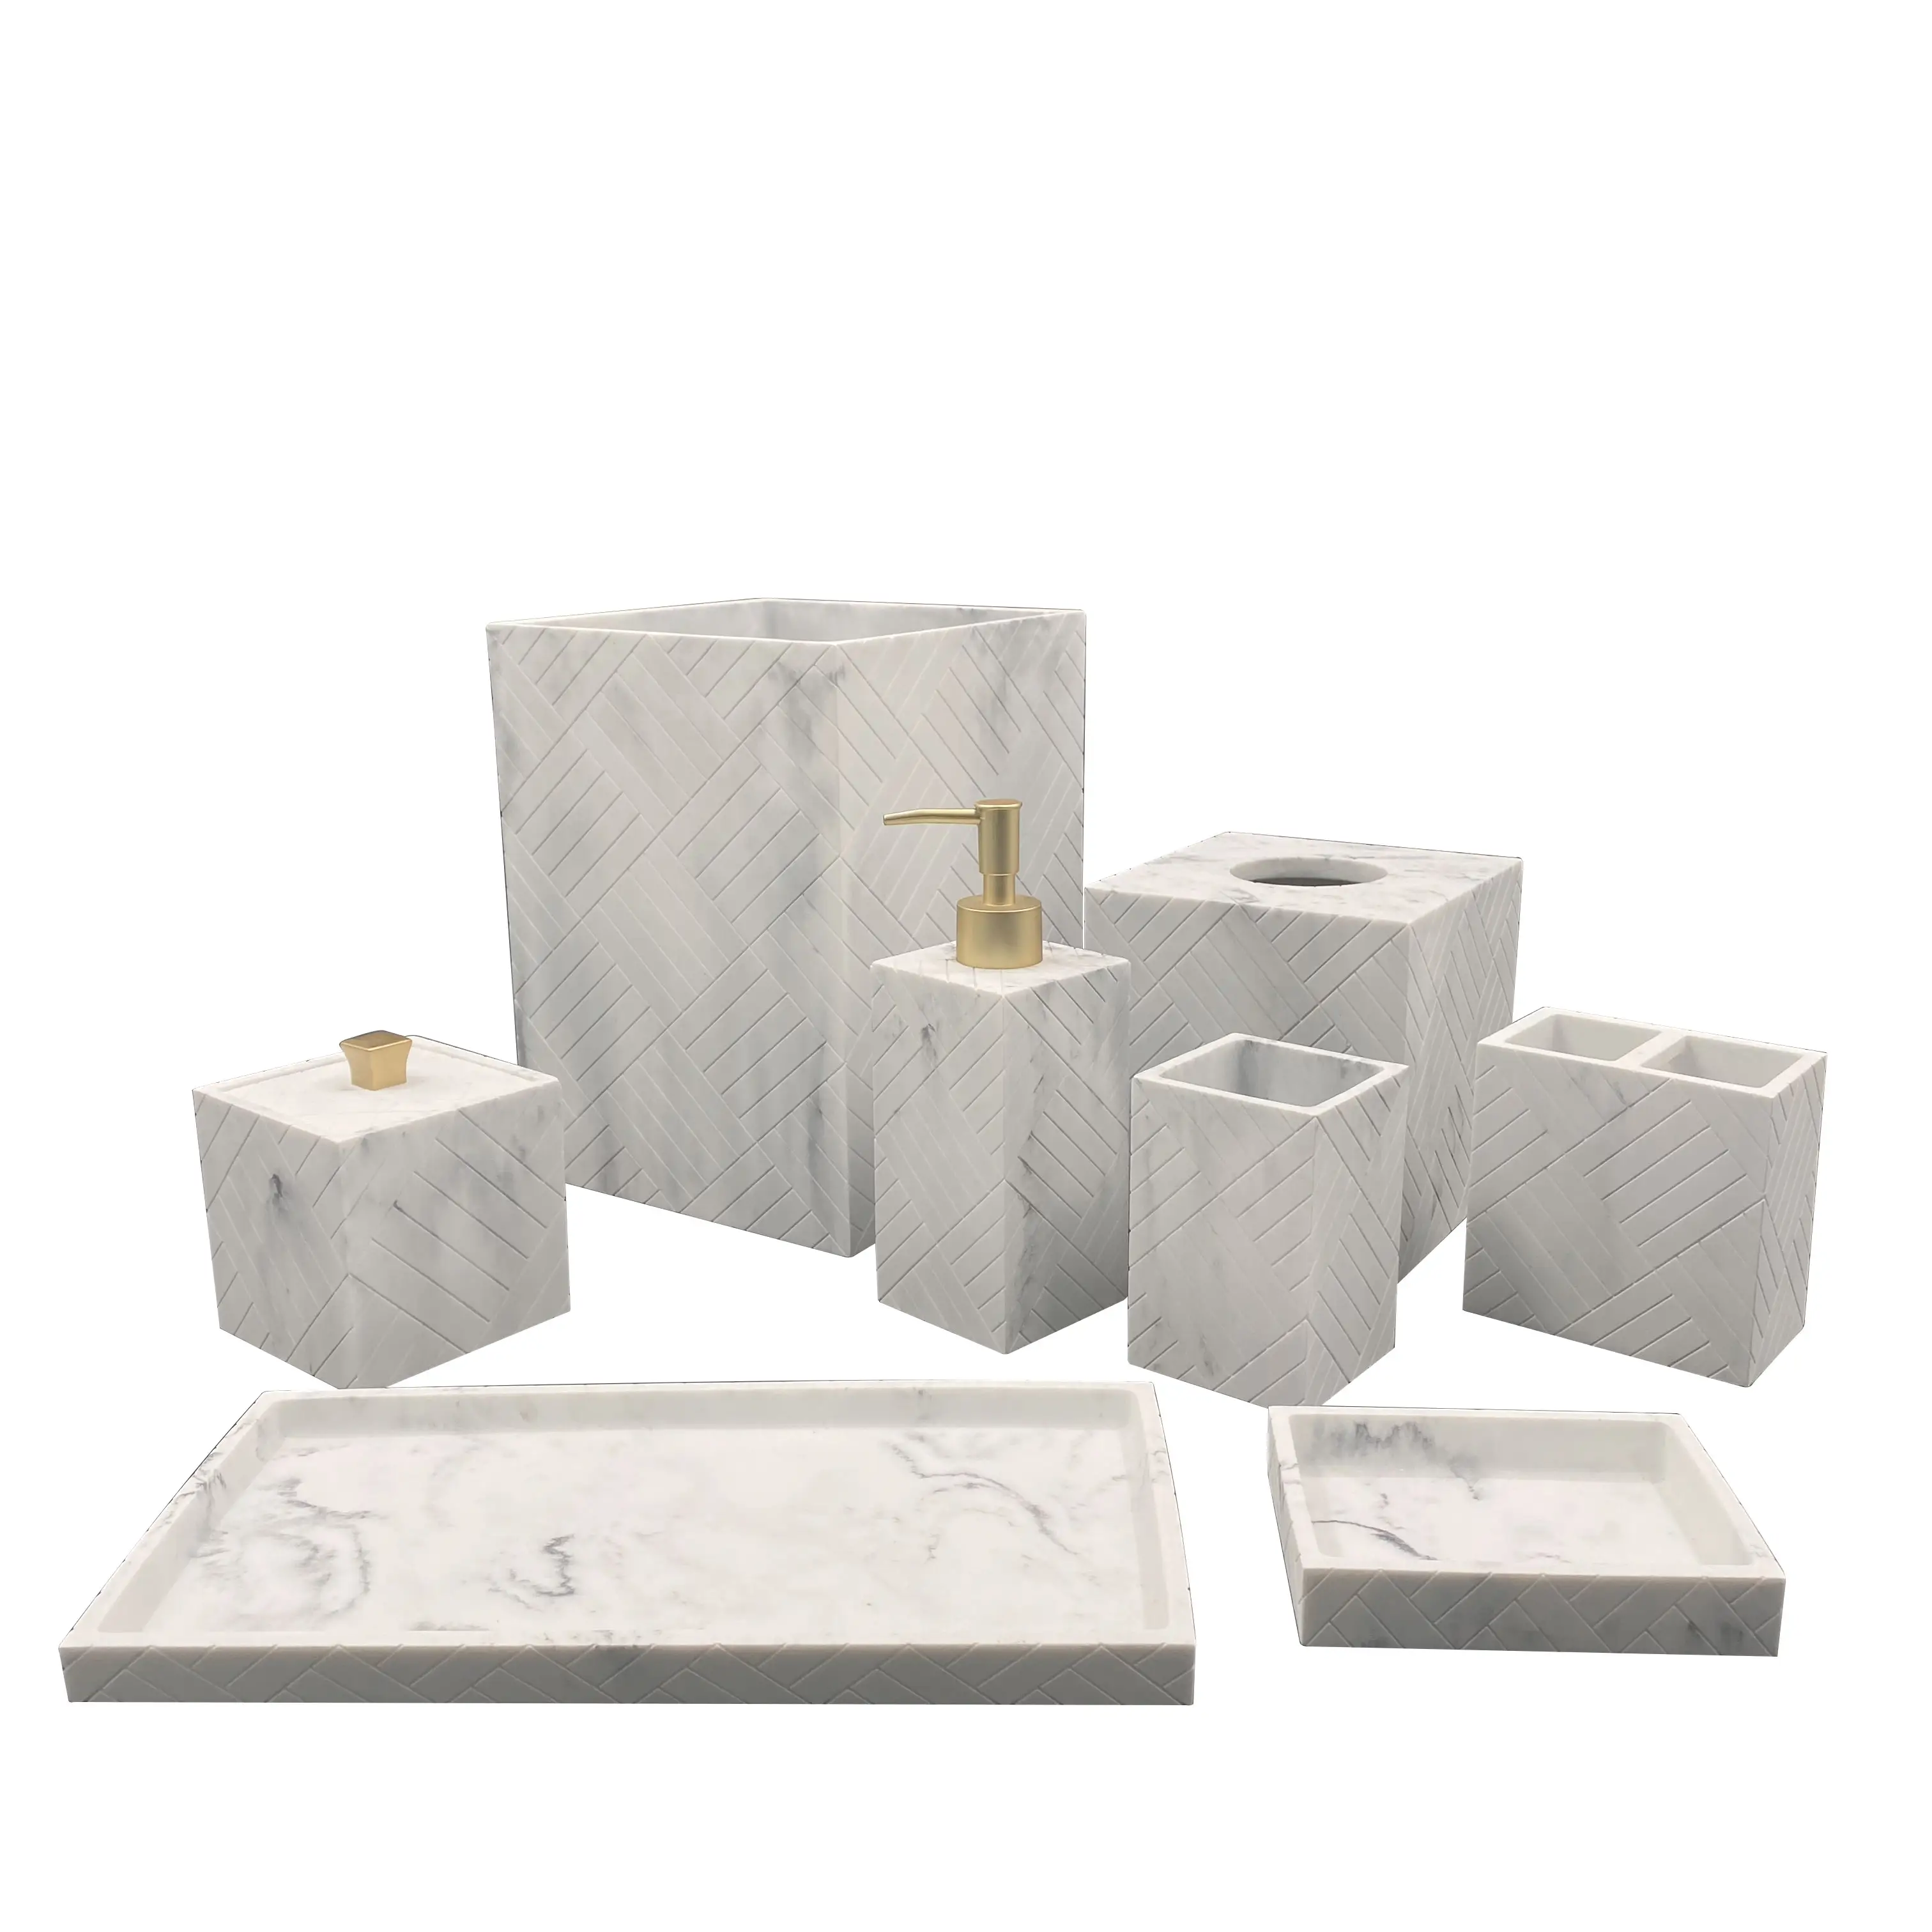 Prezzo di fabbrica di marmo Bianco Cucina in resina Accessori Da Bagno Set Da Bagno per La Decorazione Domestica